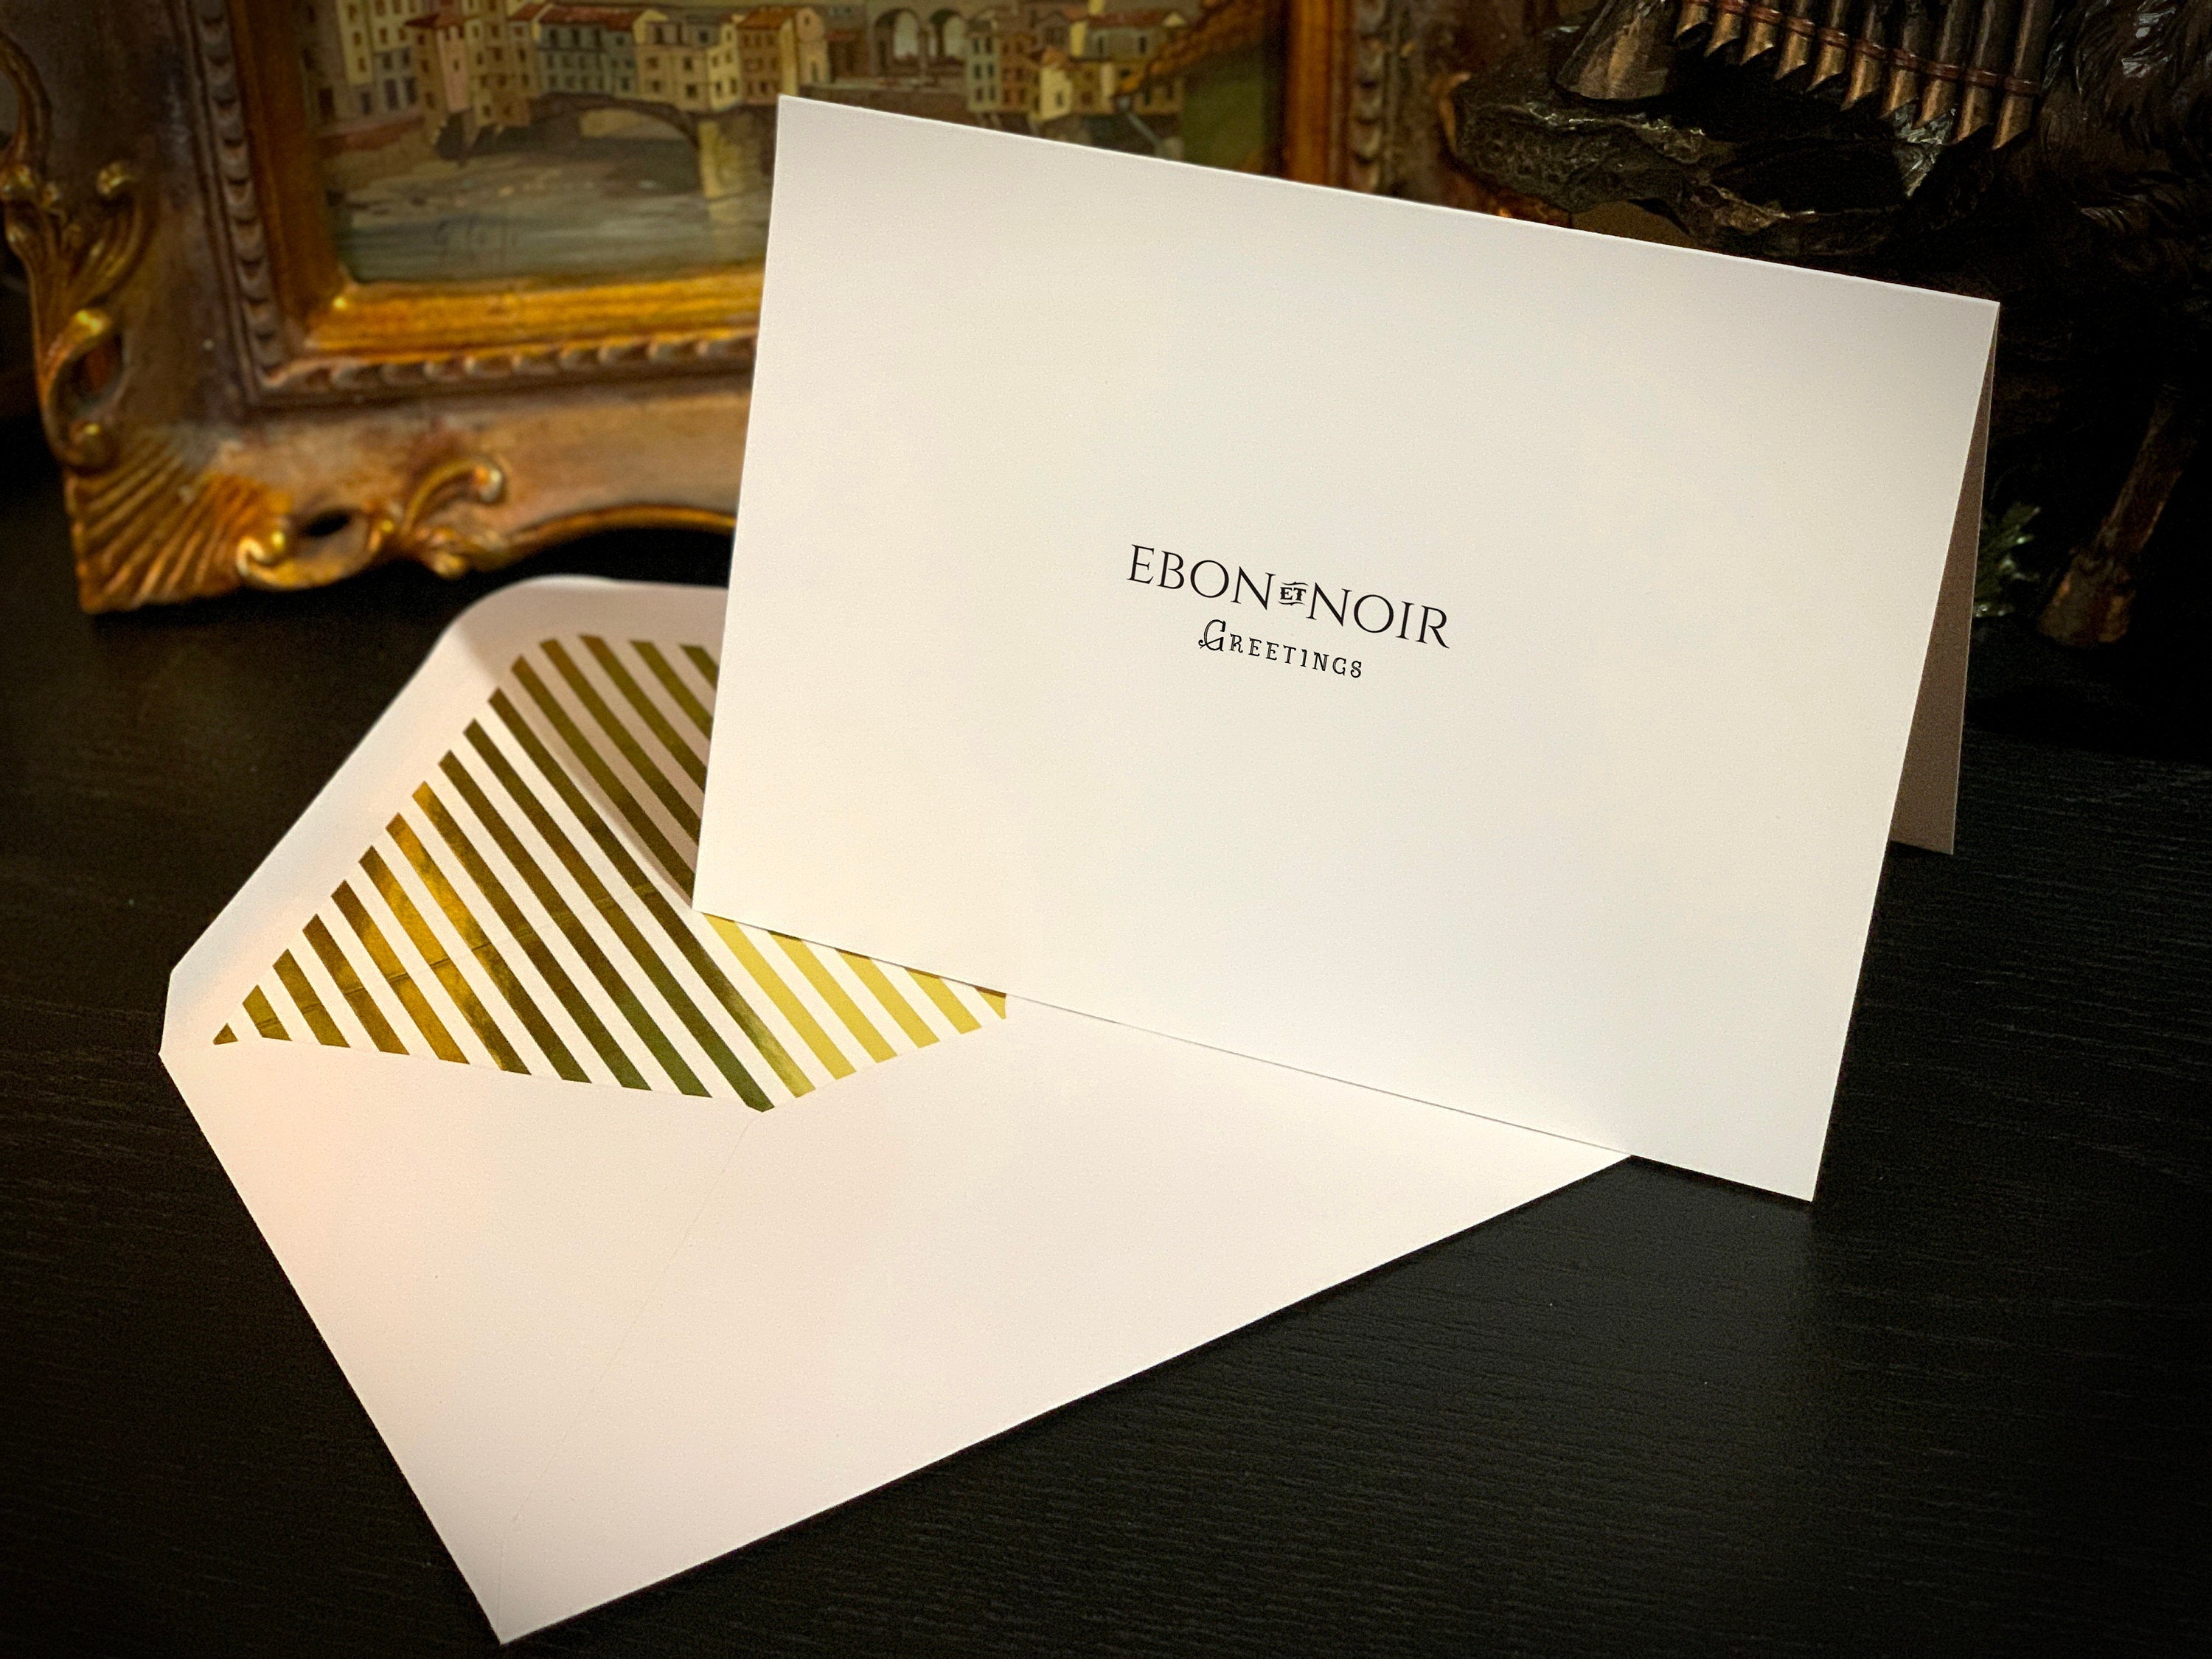 Basket of Easter Eggs, Easter Greeting Card with Elegant Striped Gold Foil Envelope, 1 Card/Envelope